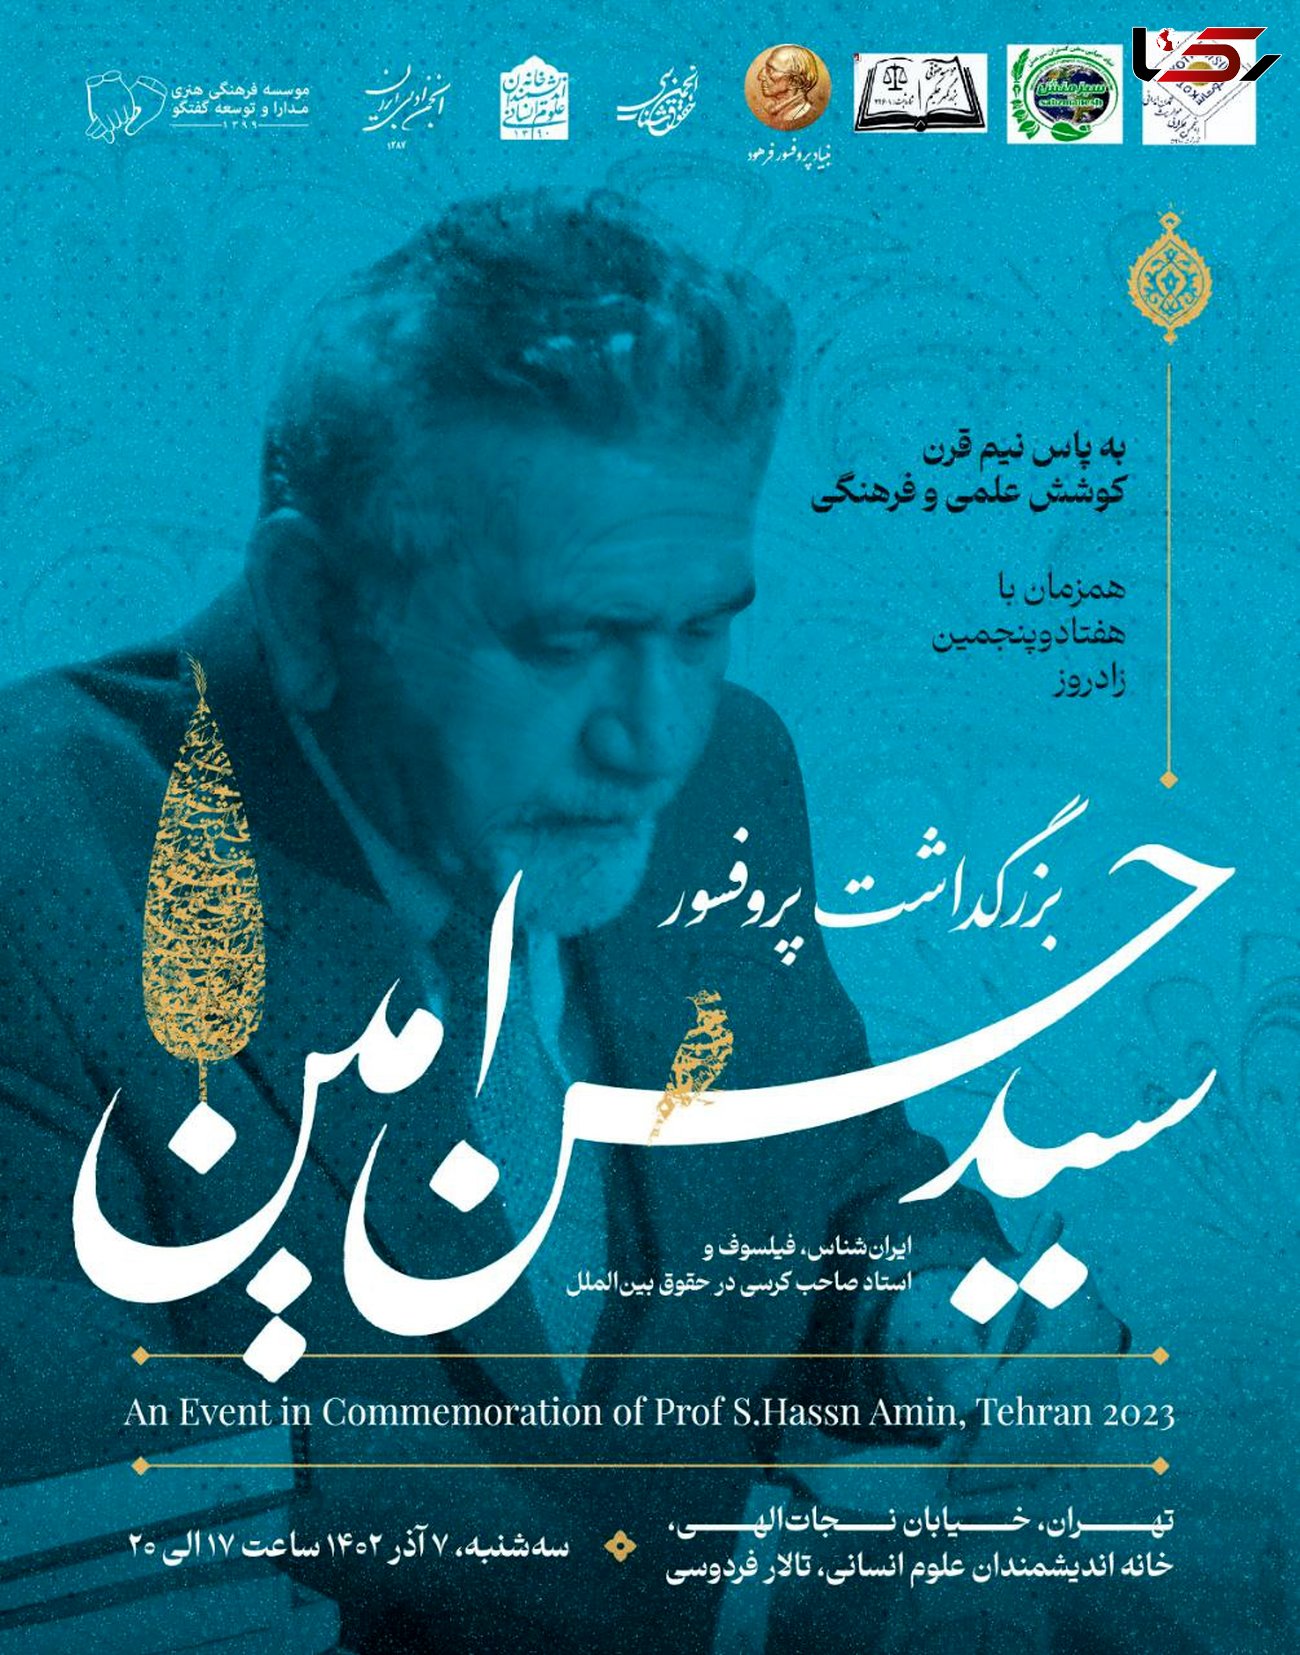 برگزاری برزگداشت پروفسور امین، هم زمان با هفتادو پنجمین زادروز وی در تهران